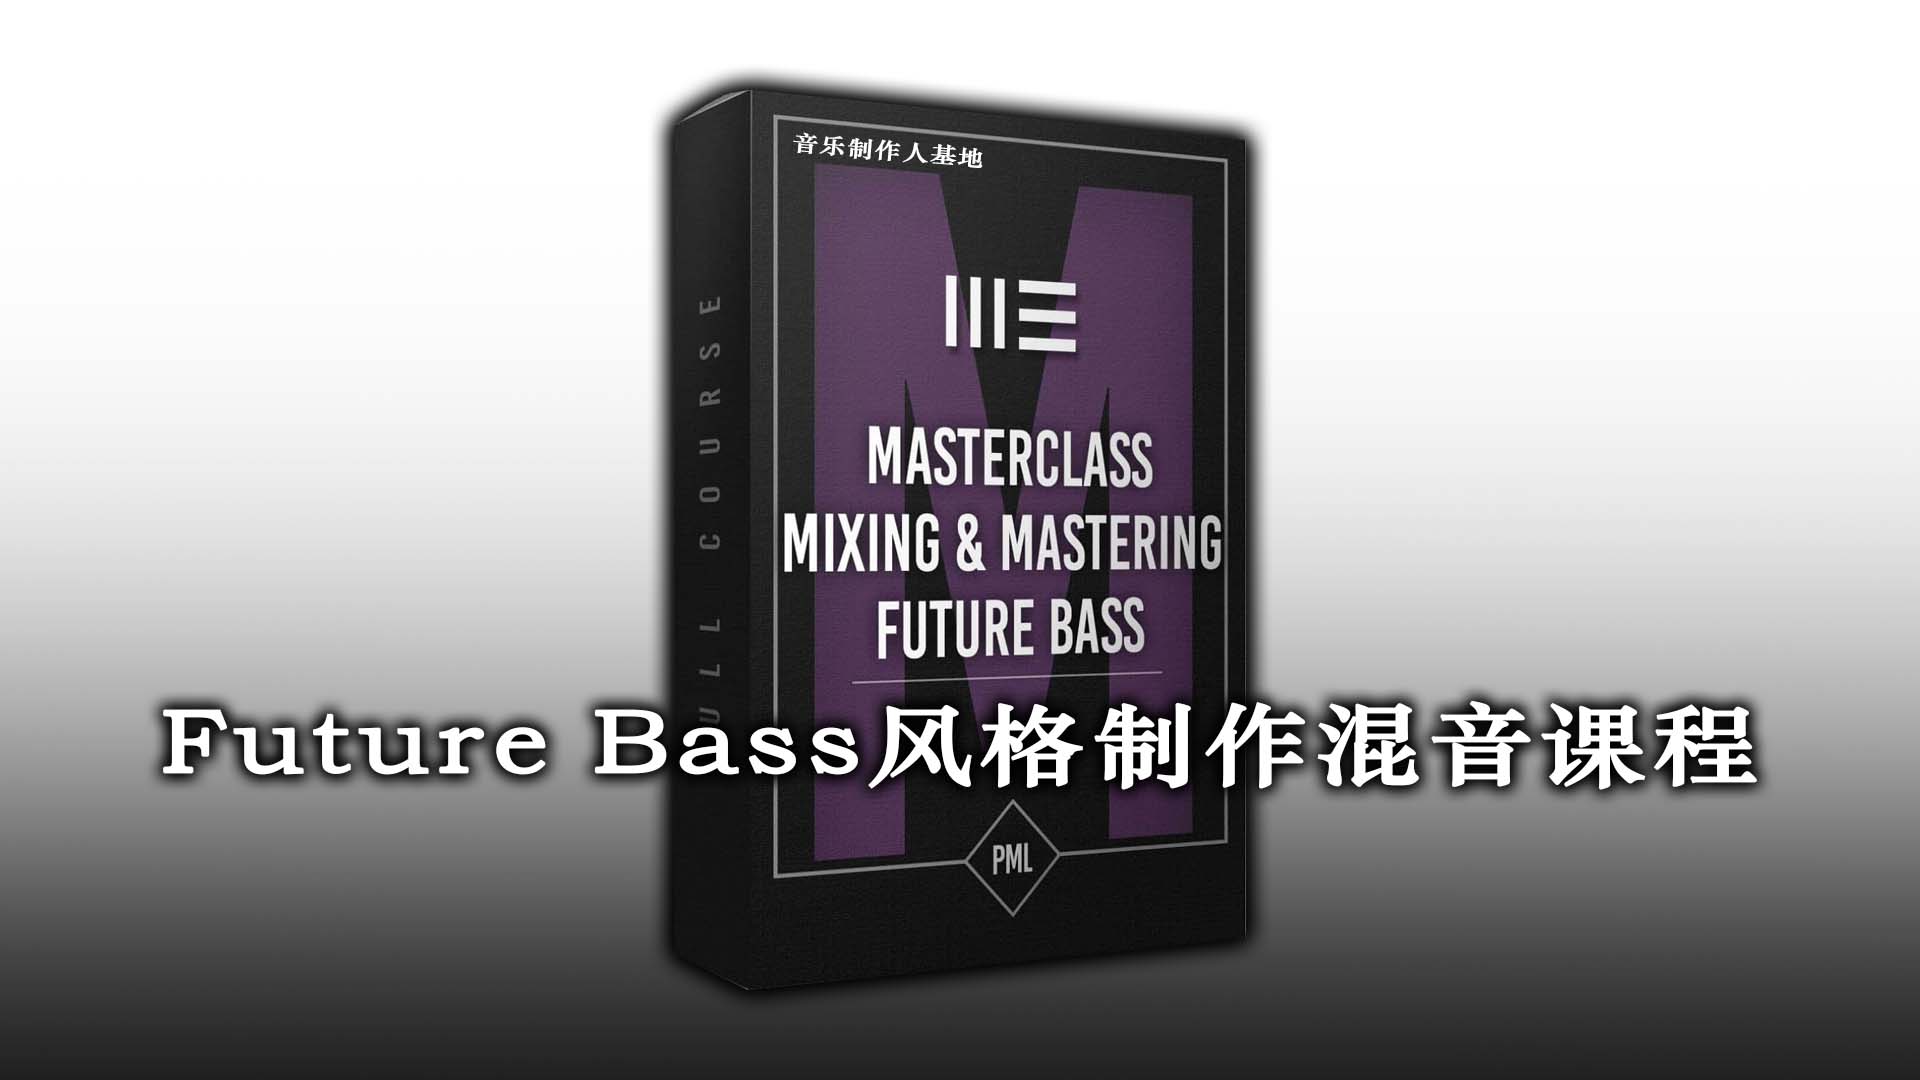 Future Bass 风格音乐制作混音课程 [超清下载到本地观看] 7大章节